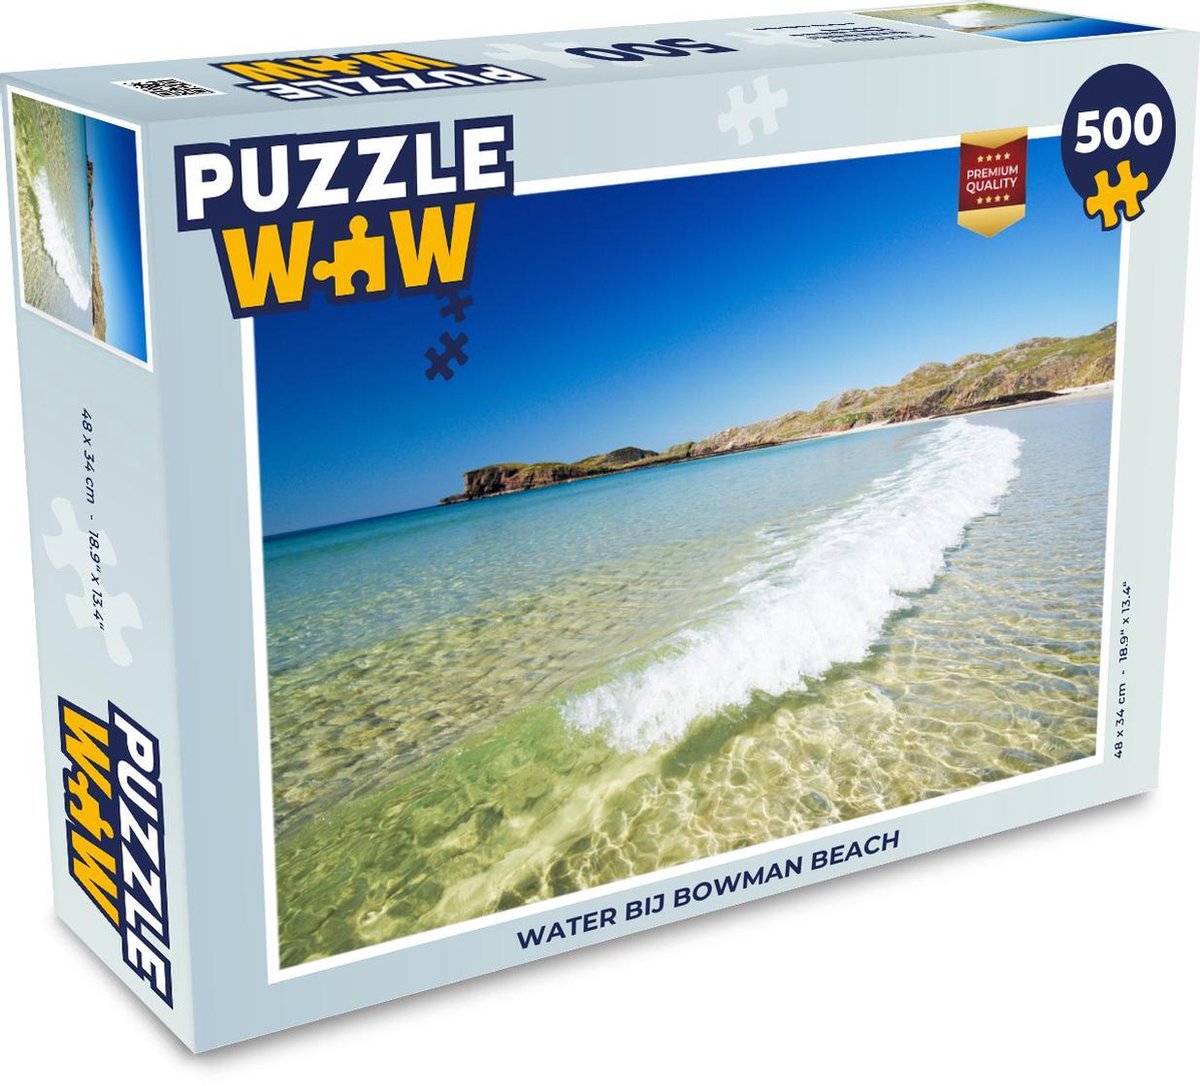 Afbeelding van product Puzzel 500 stukjes Bowman Beach - Water bij Bowman Beach - PuzzleWow heeft +100000 puzzels